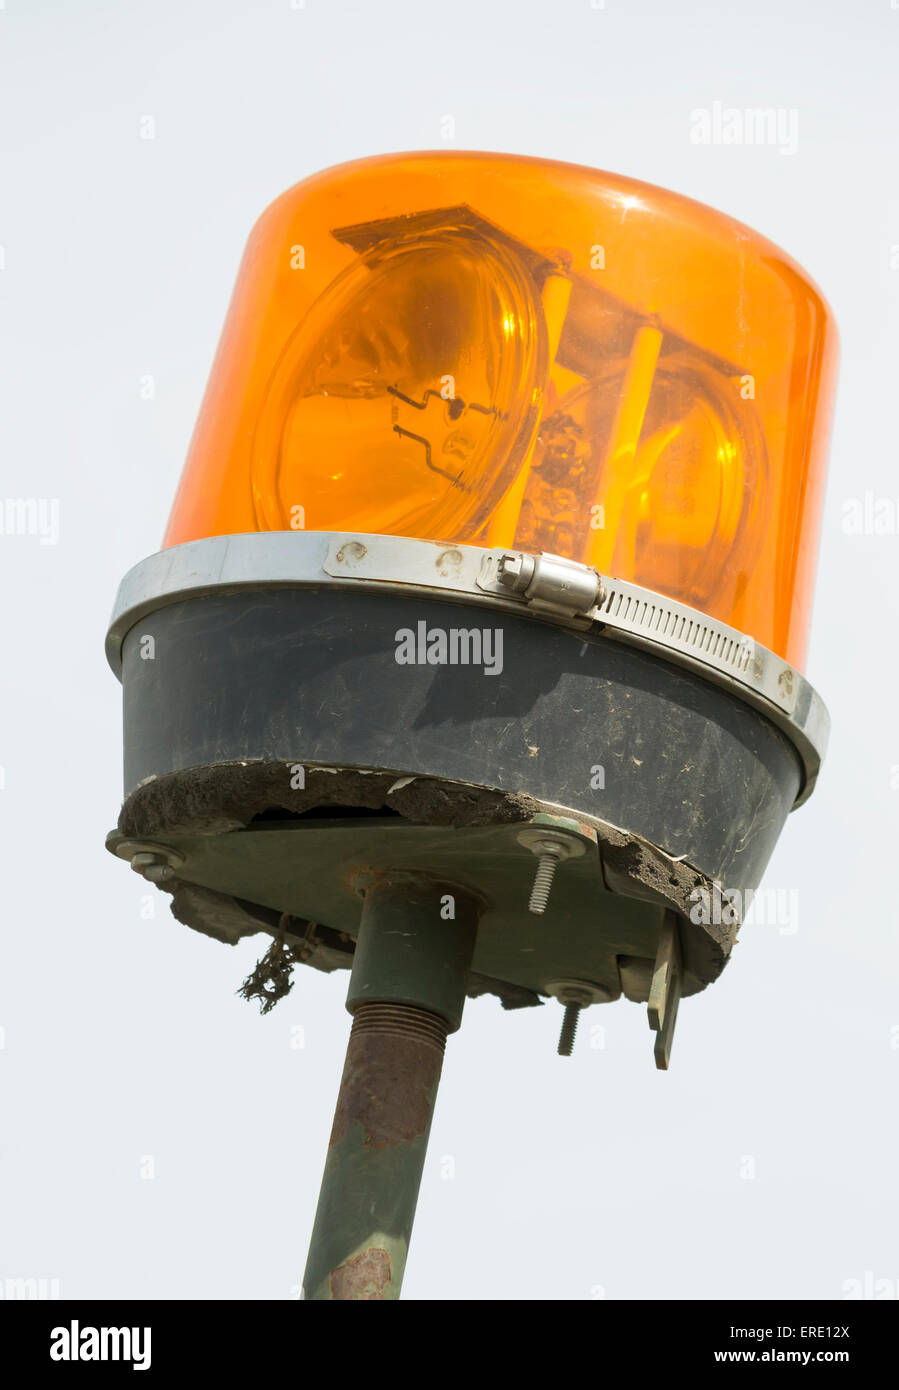 Veicolo di emergenza del sistema di illuminazione dettaglio, girofaro arancione con specchi rotanti Foto Stock